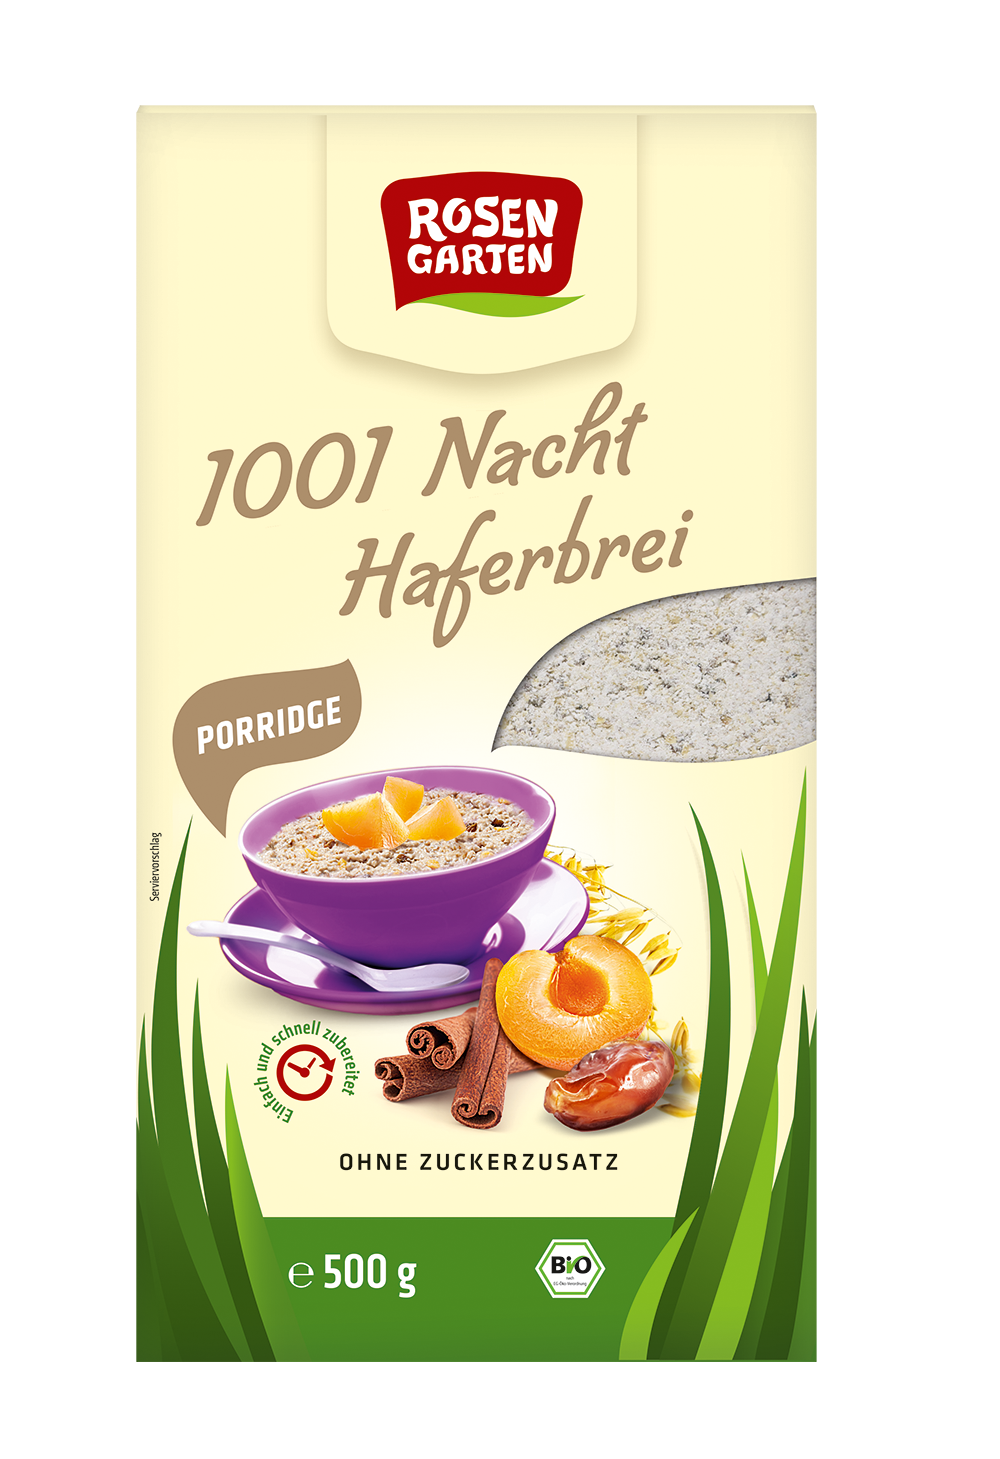 Rosengarten Porridge 1001-Nacht-Haferbrei - ungesüßt 500g